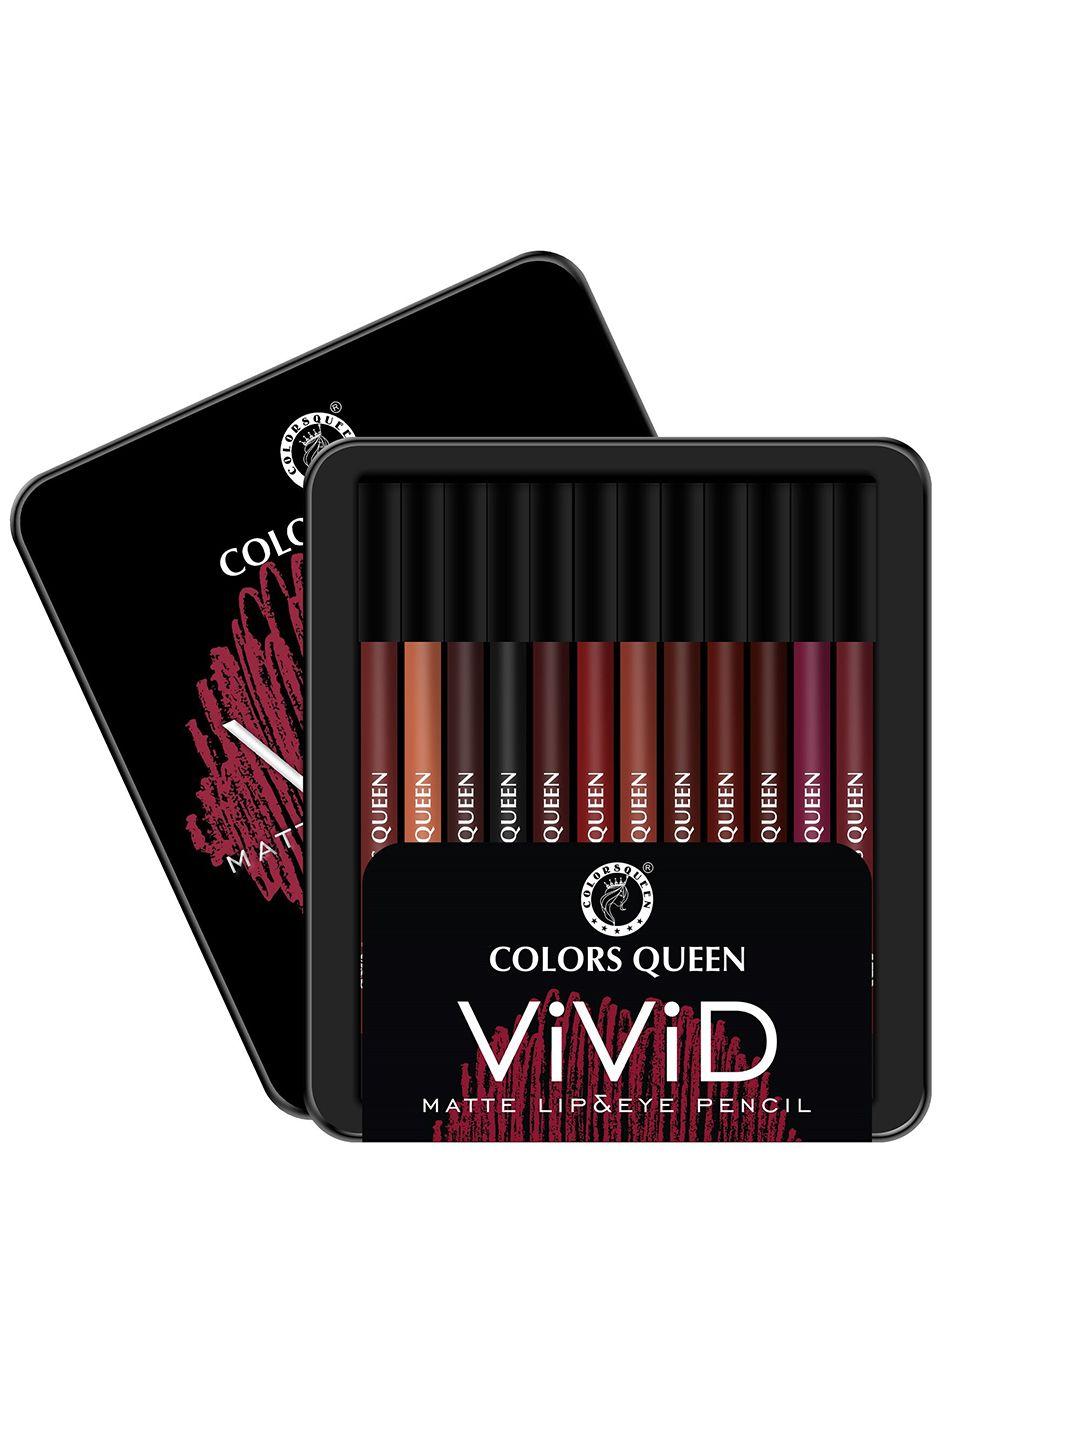 colors queen  vivid 12 pcs matte lip liner & eye pencil -vibrant shades